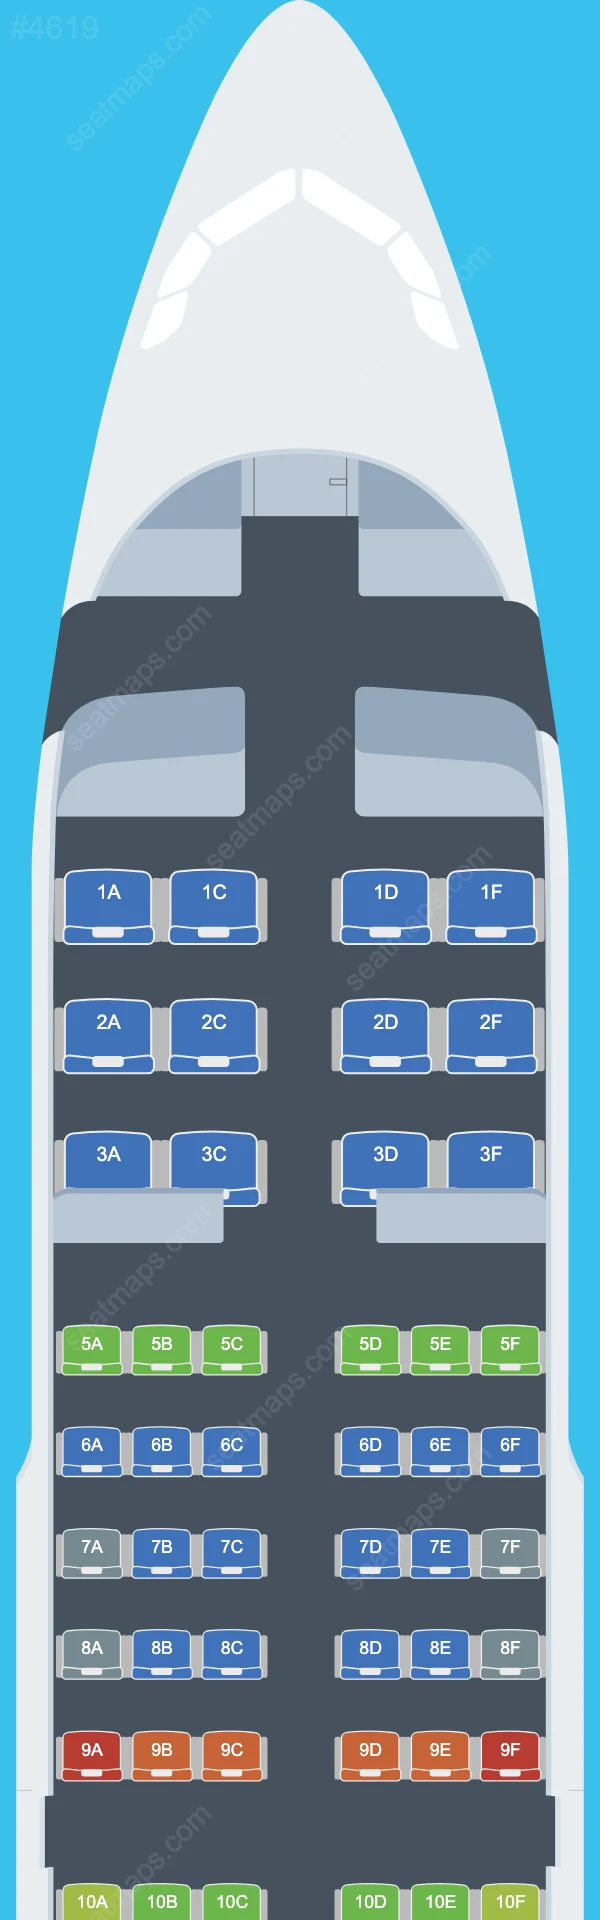 Схема салона Chengdu Airlines в самолете Airbus A319 A319-100 V.2